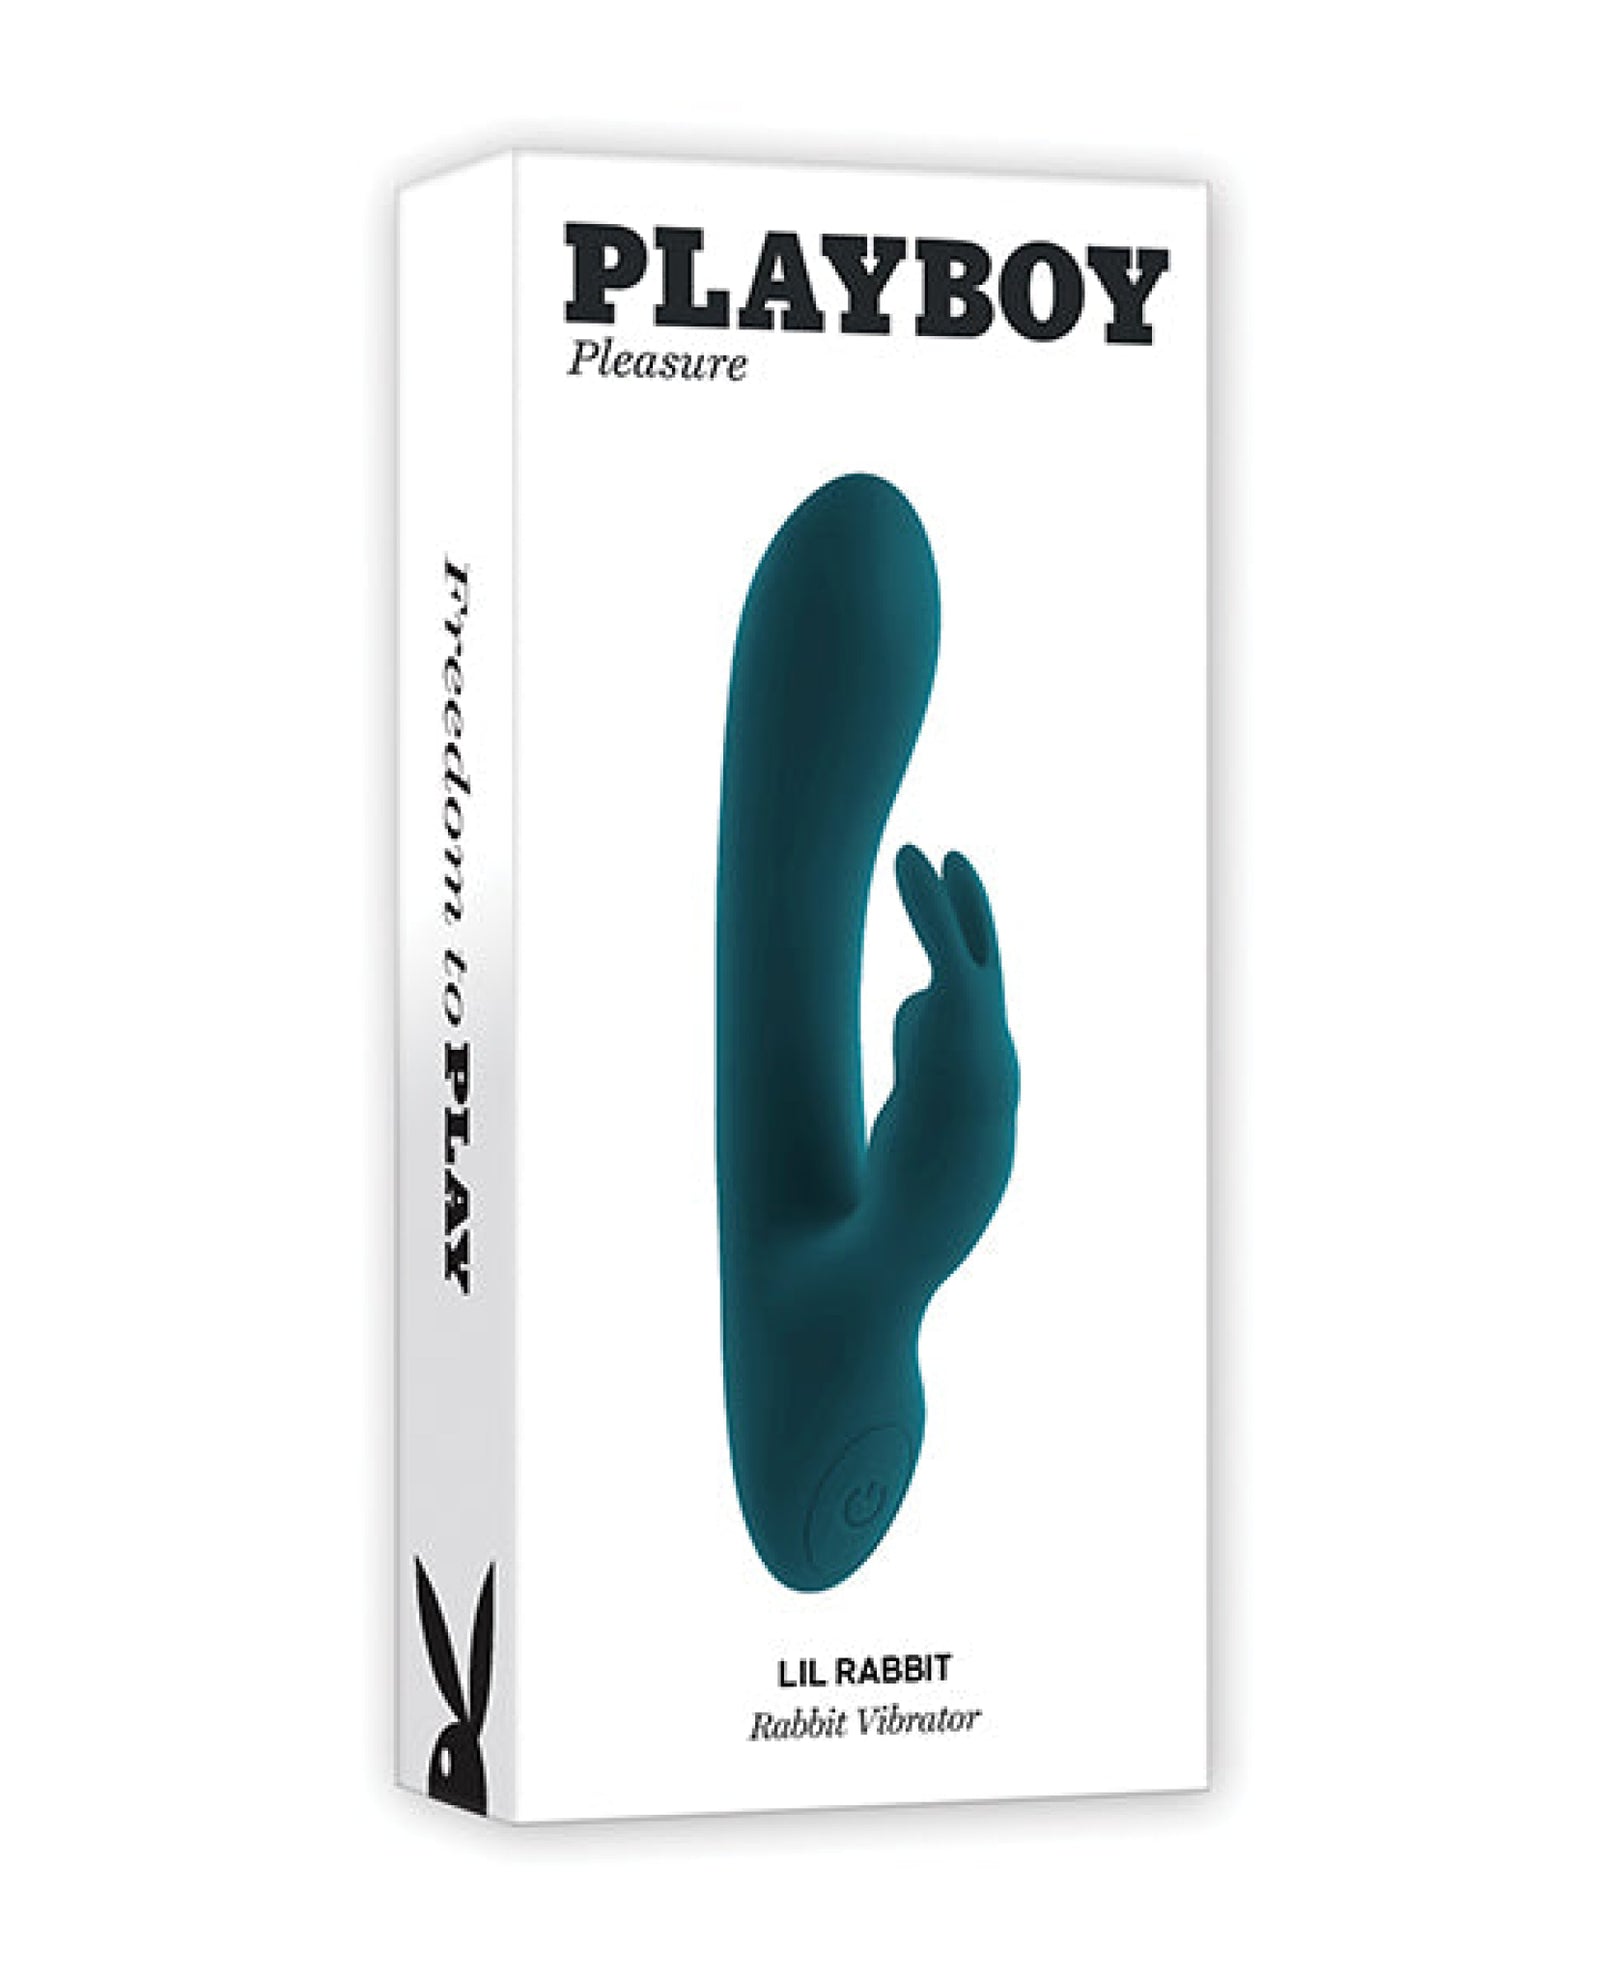 Playboy Pleasure Lil Rabbit Vibrator - Deep Teal Playboy